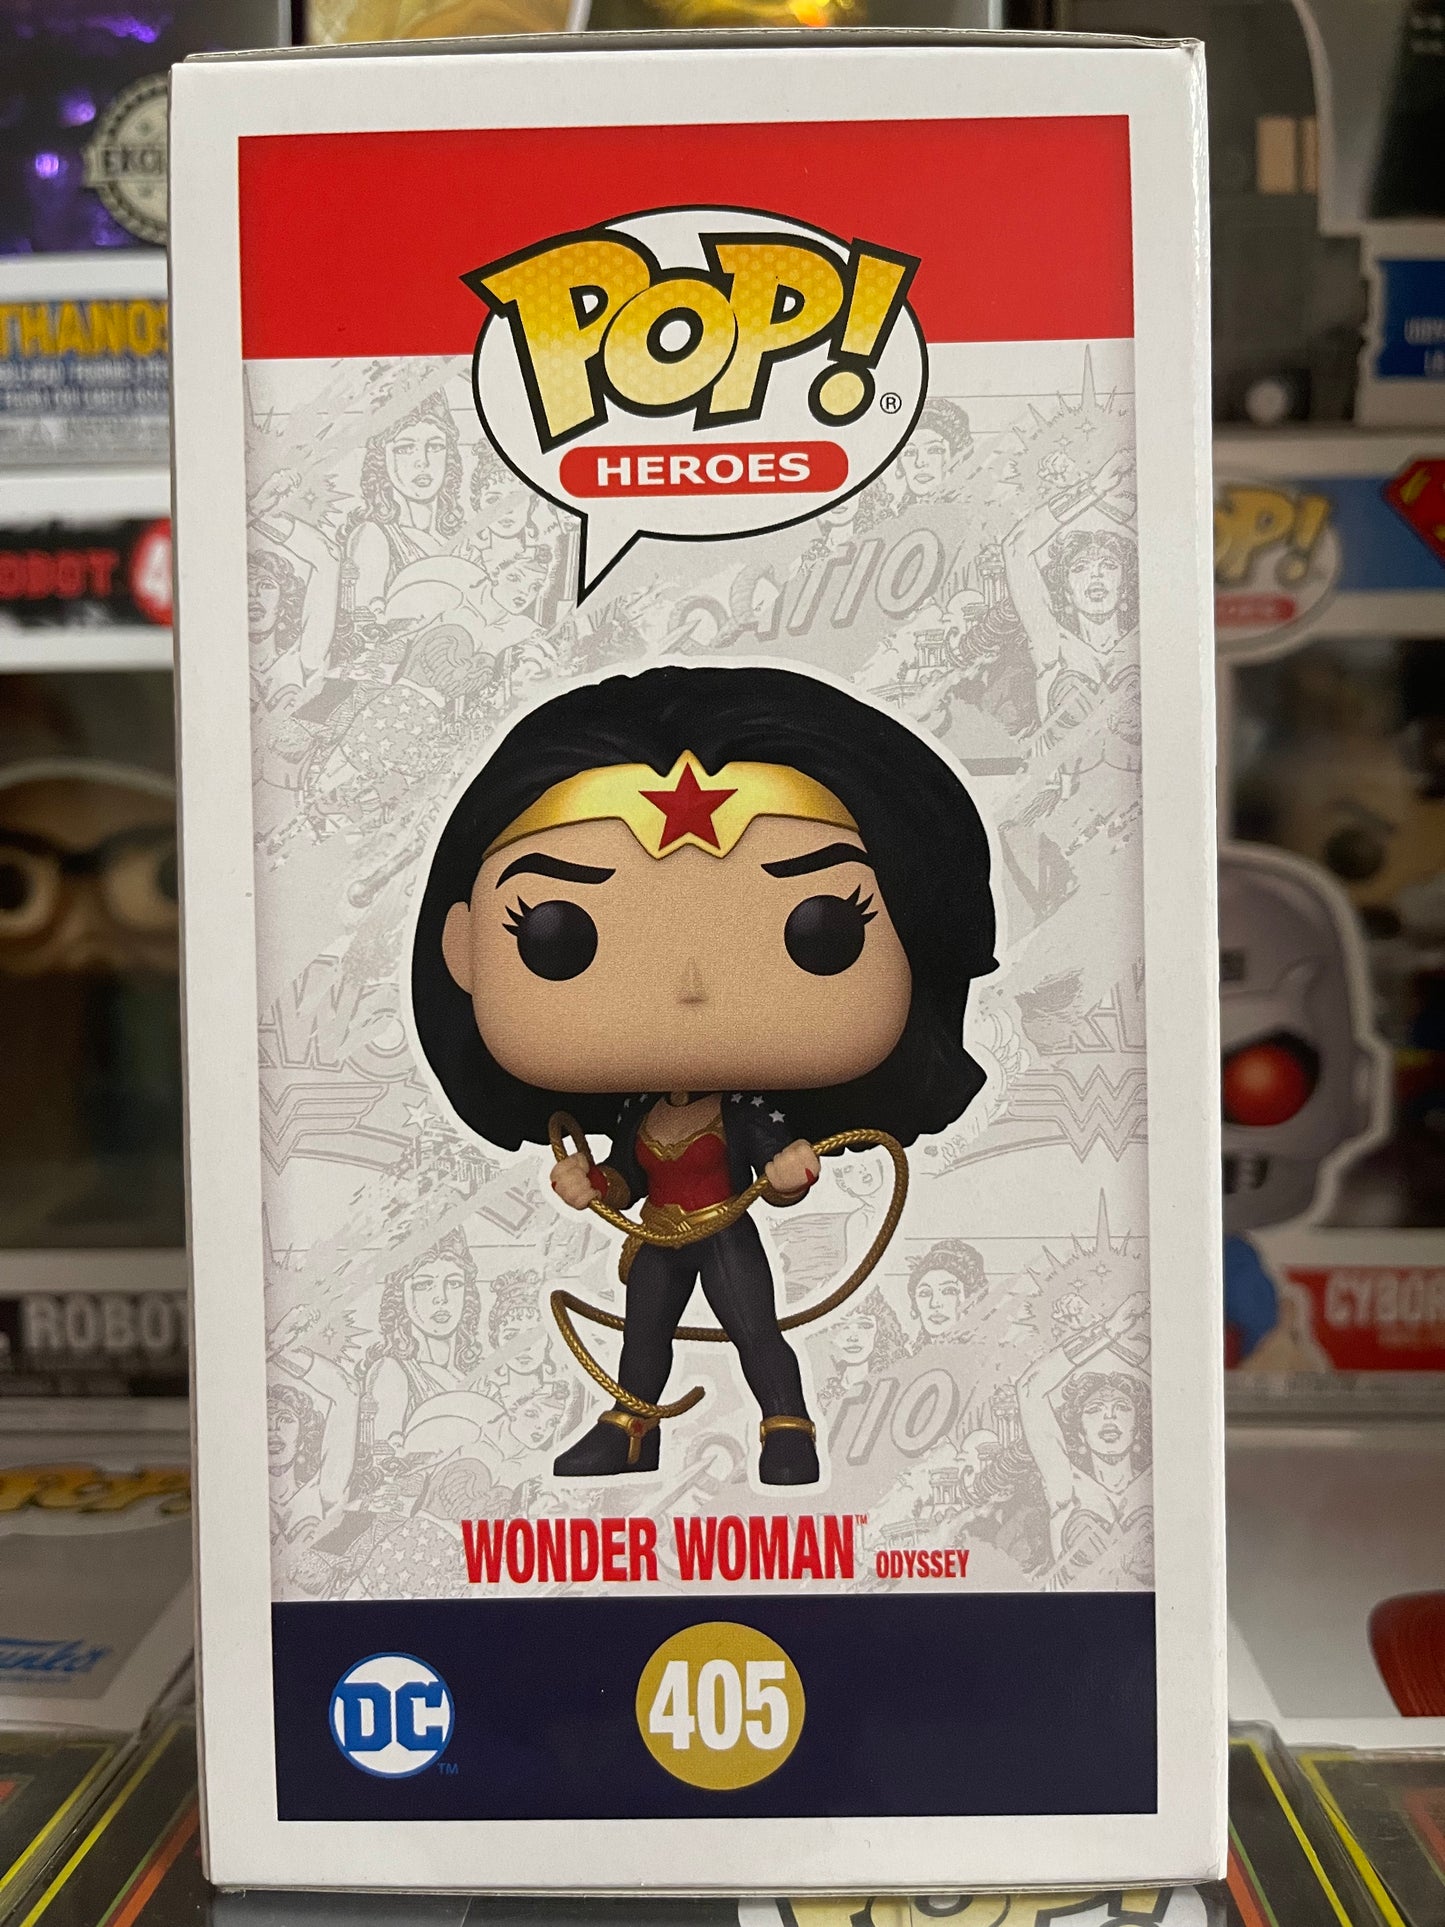 DC Wonder Woman - Wonder Woman Odyssey (405)